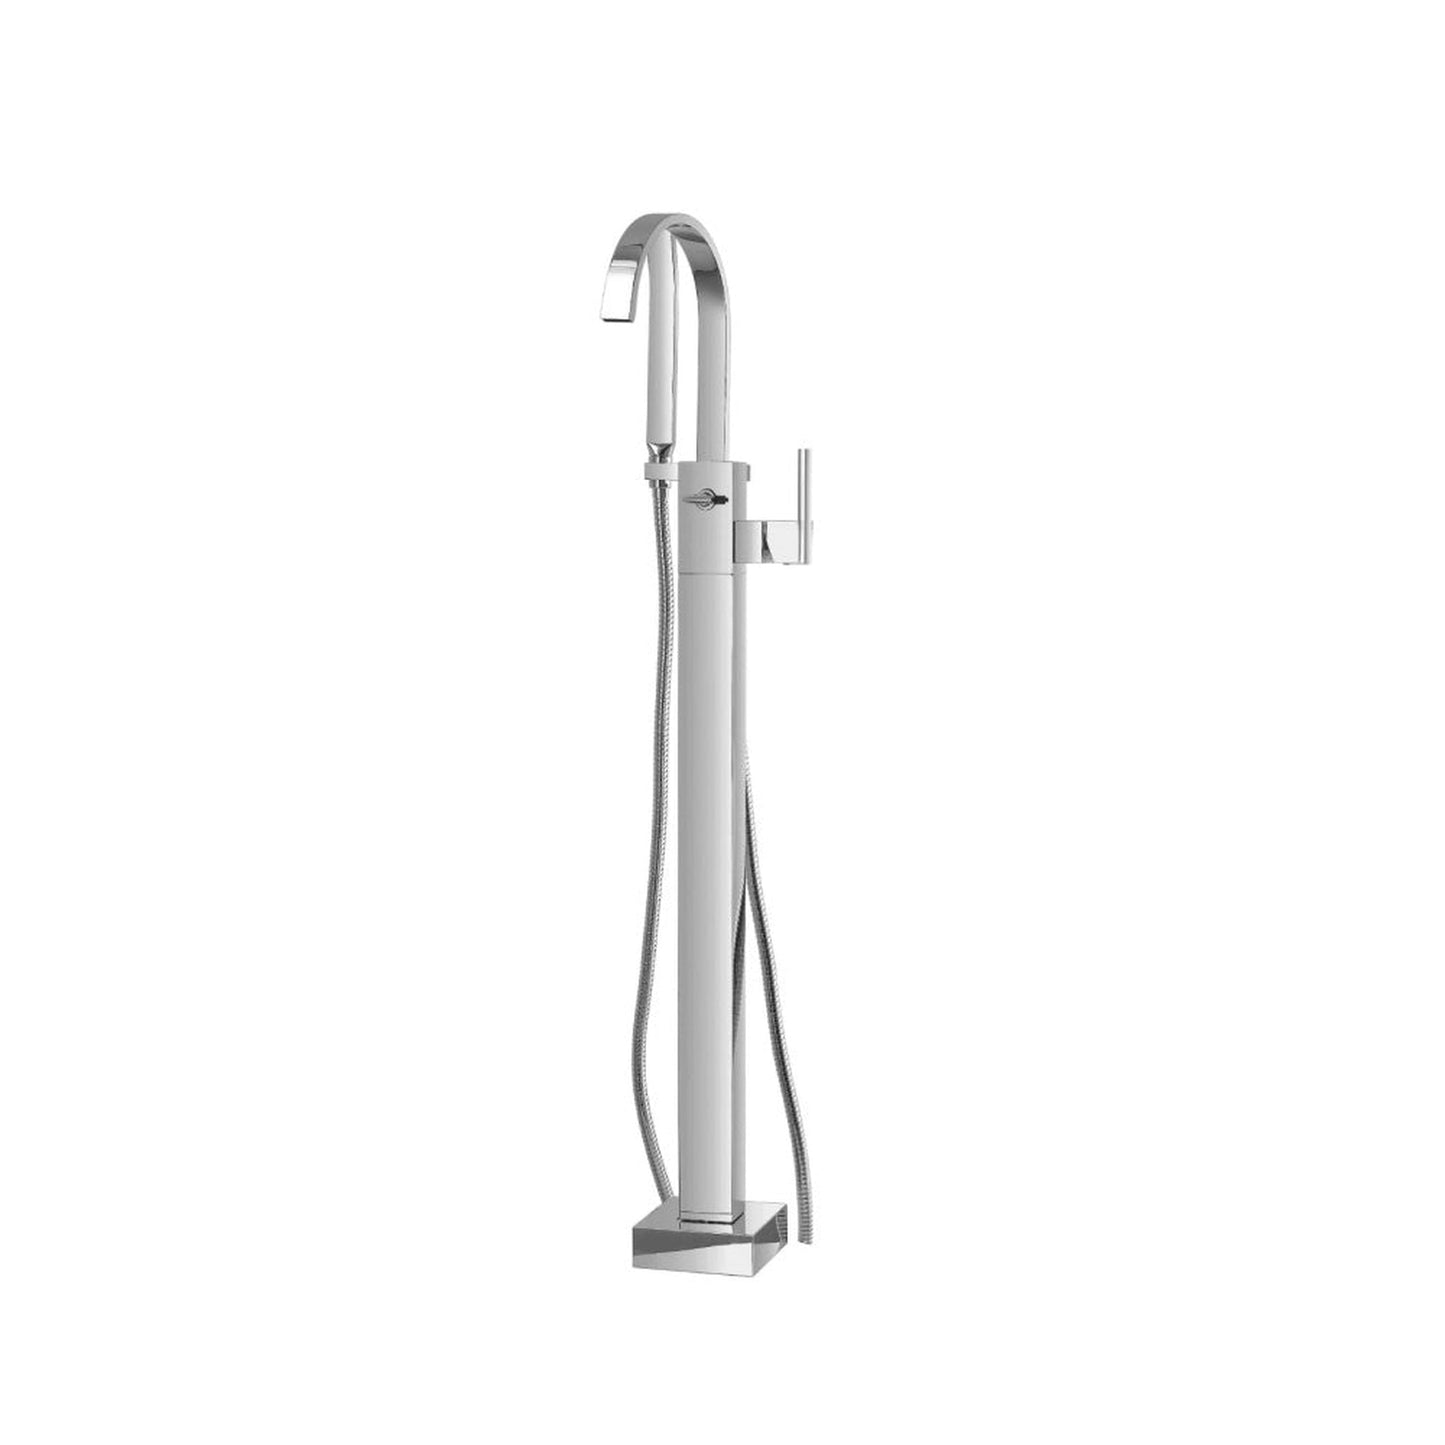 Isenberg Serie 150 Freestanding Floor Mount Bathtub / Tub Filler With Hand Shower in Chrome